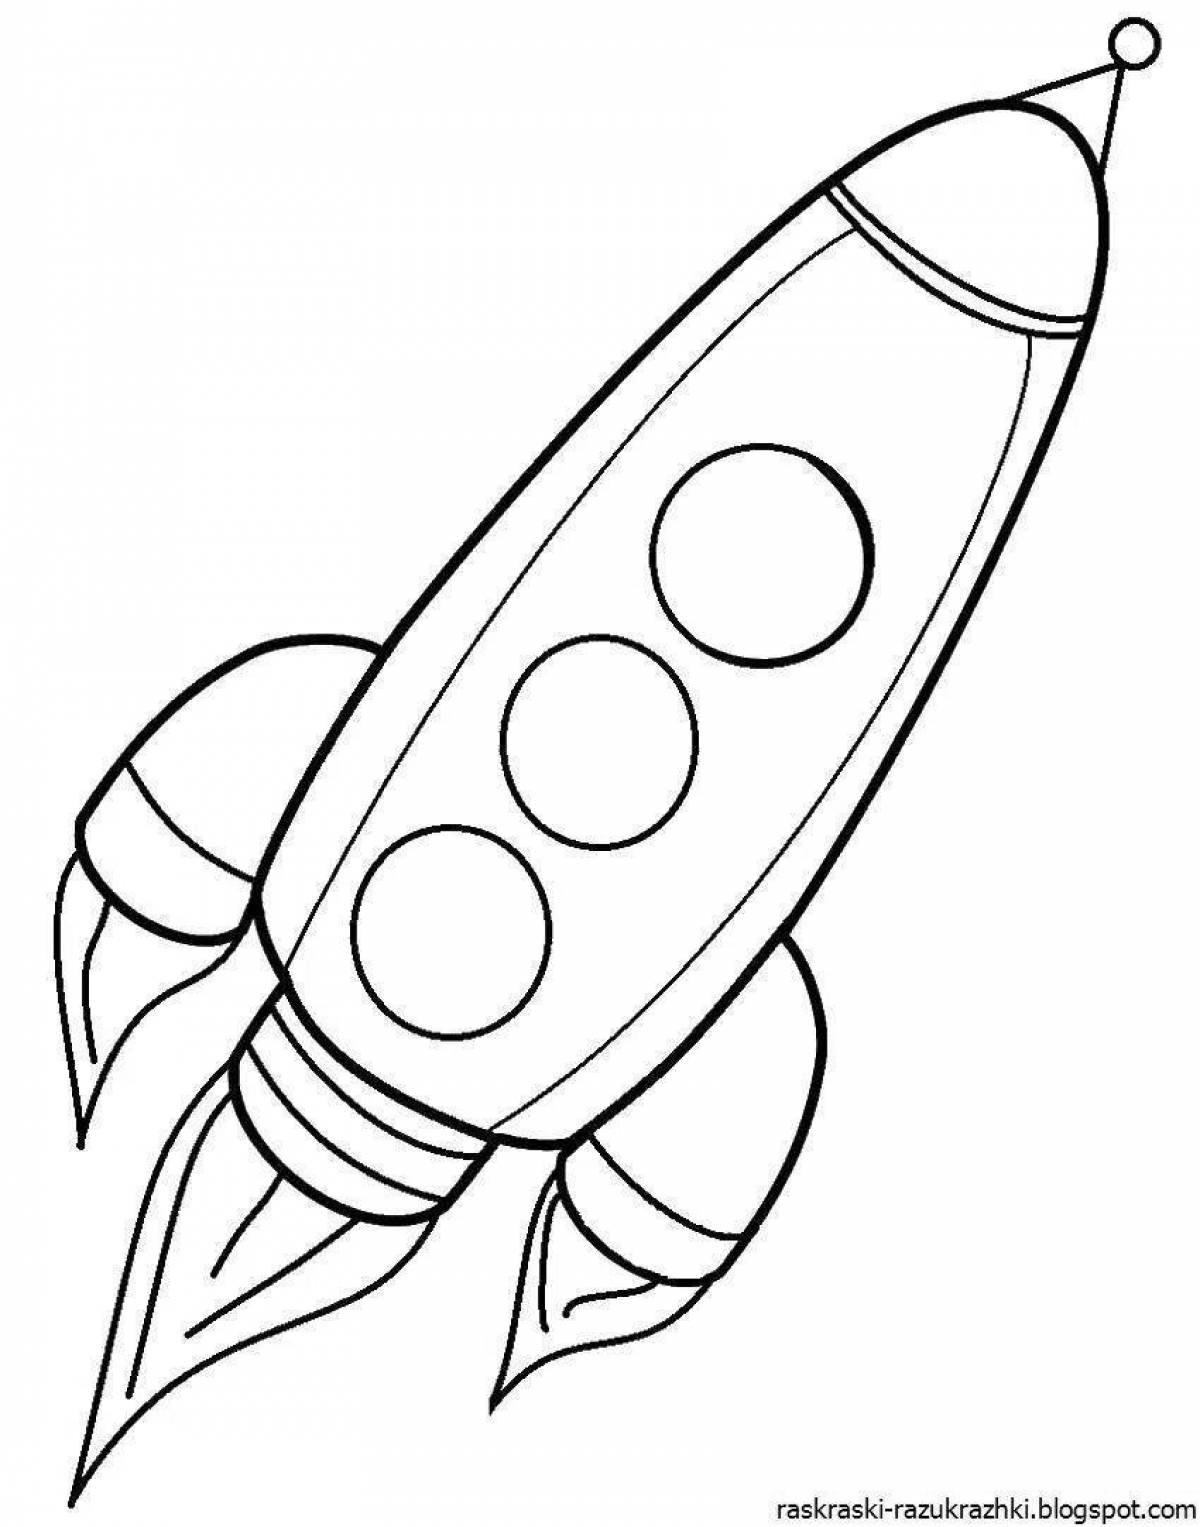 Веселая ракета-раскраска для детей 4-5 лет